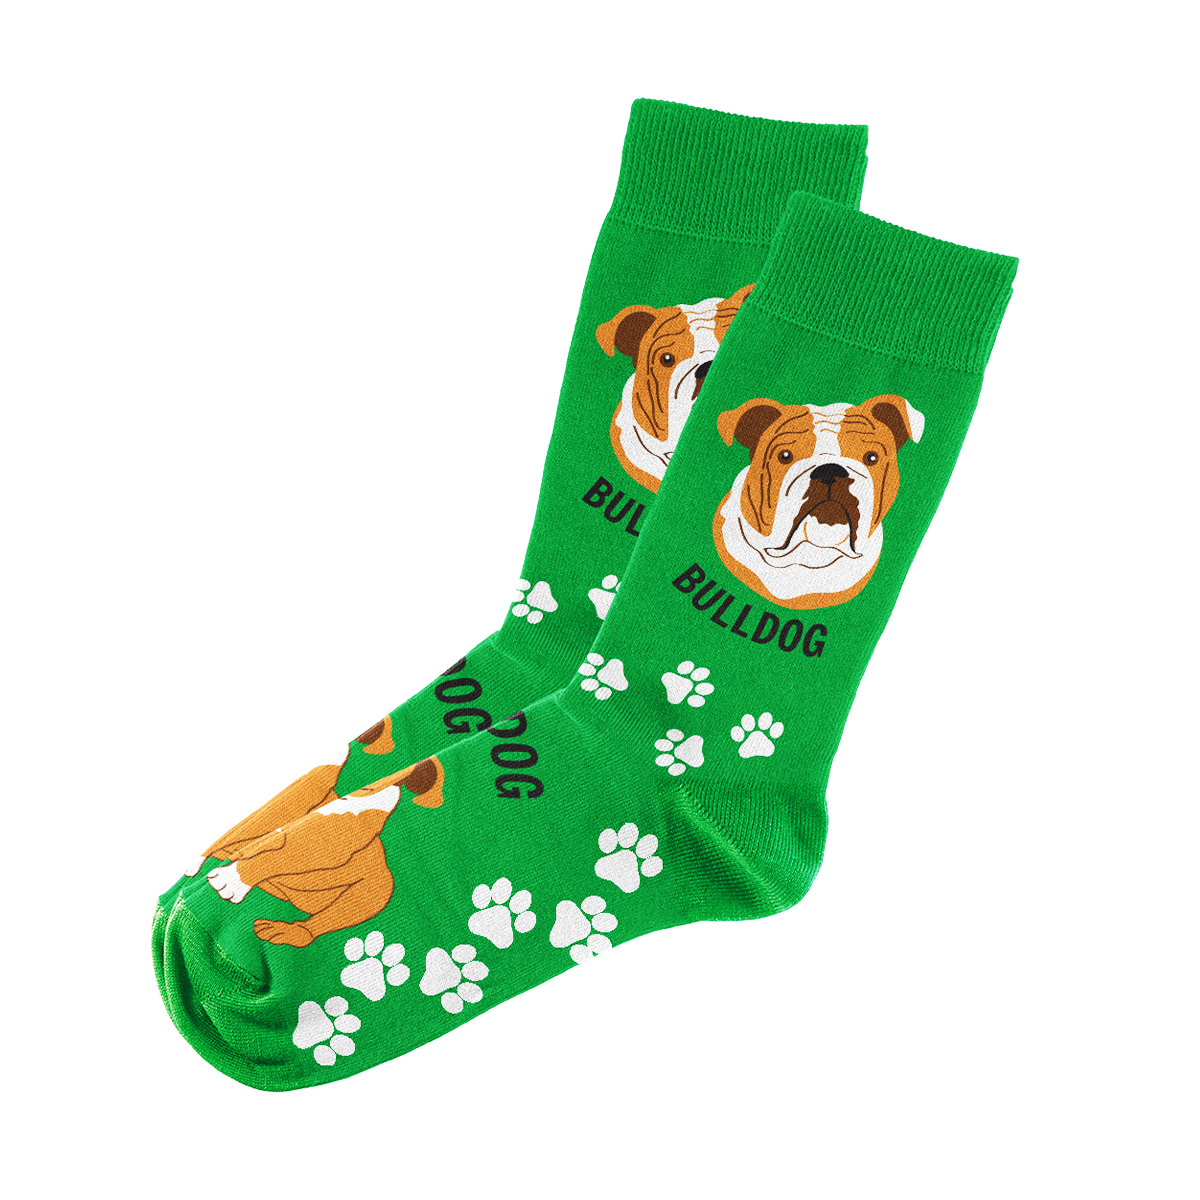 Bulldog Socks Unisex Unique Fun Design